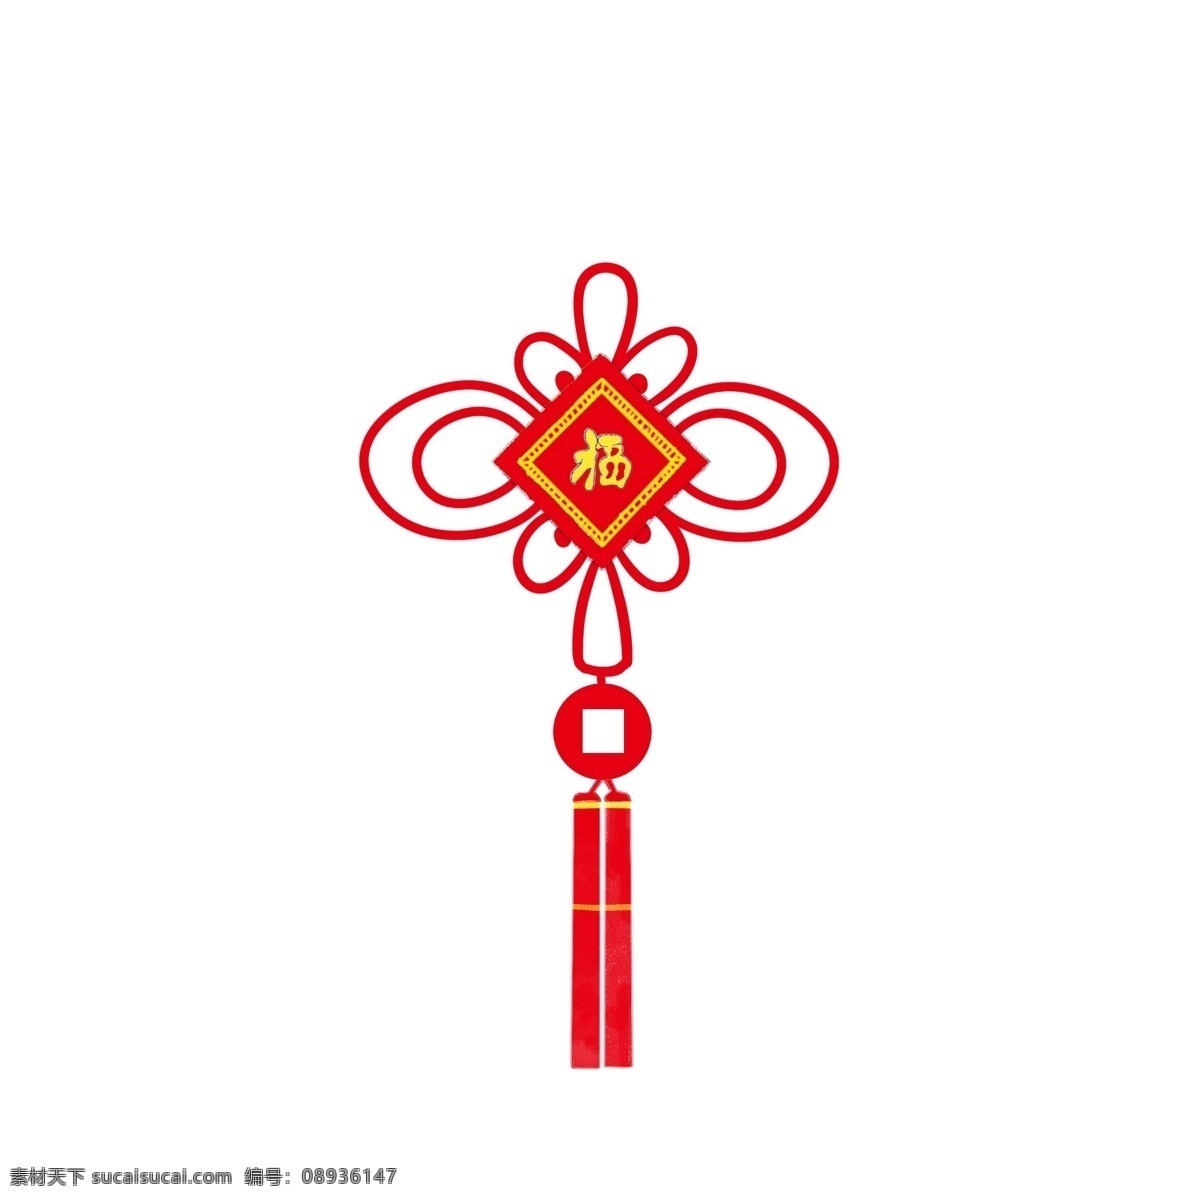 红色 中国结 手绘 插画 中国风 黄色 流苏 穗子 对称 对称美 正方形 圆形 中国美